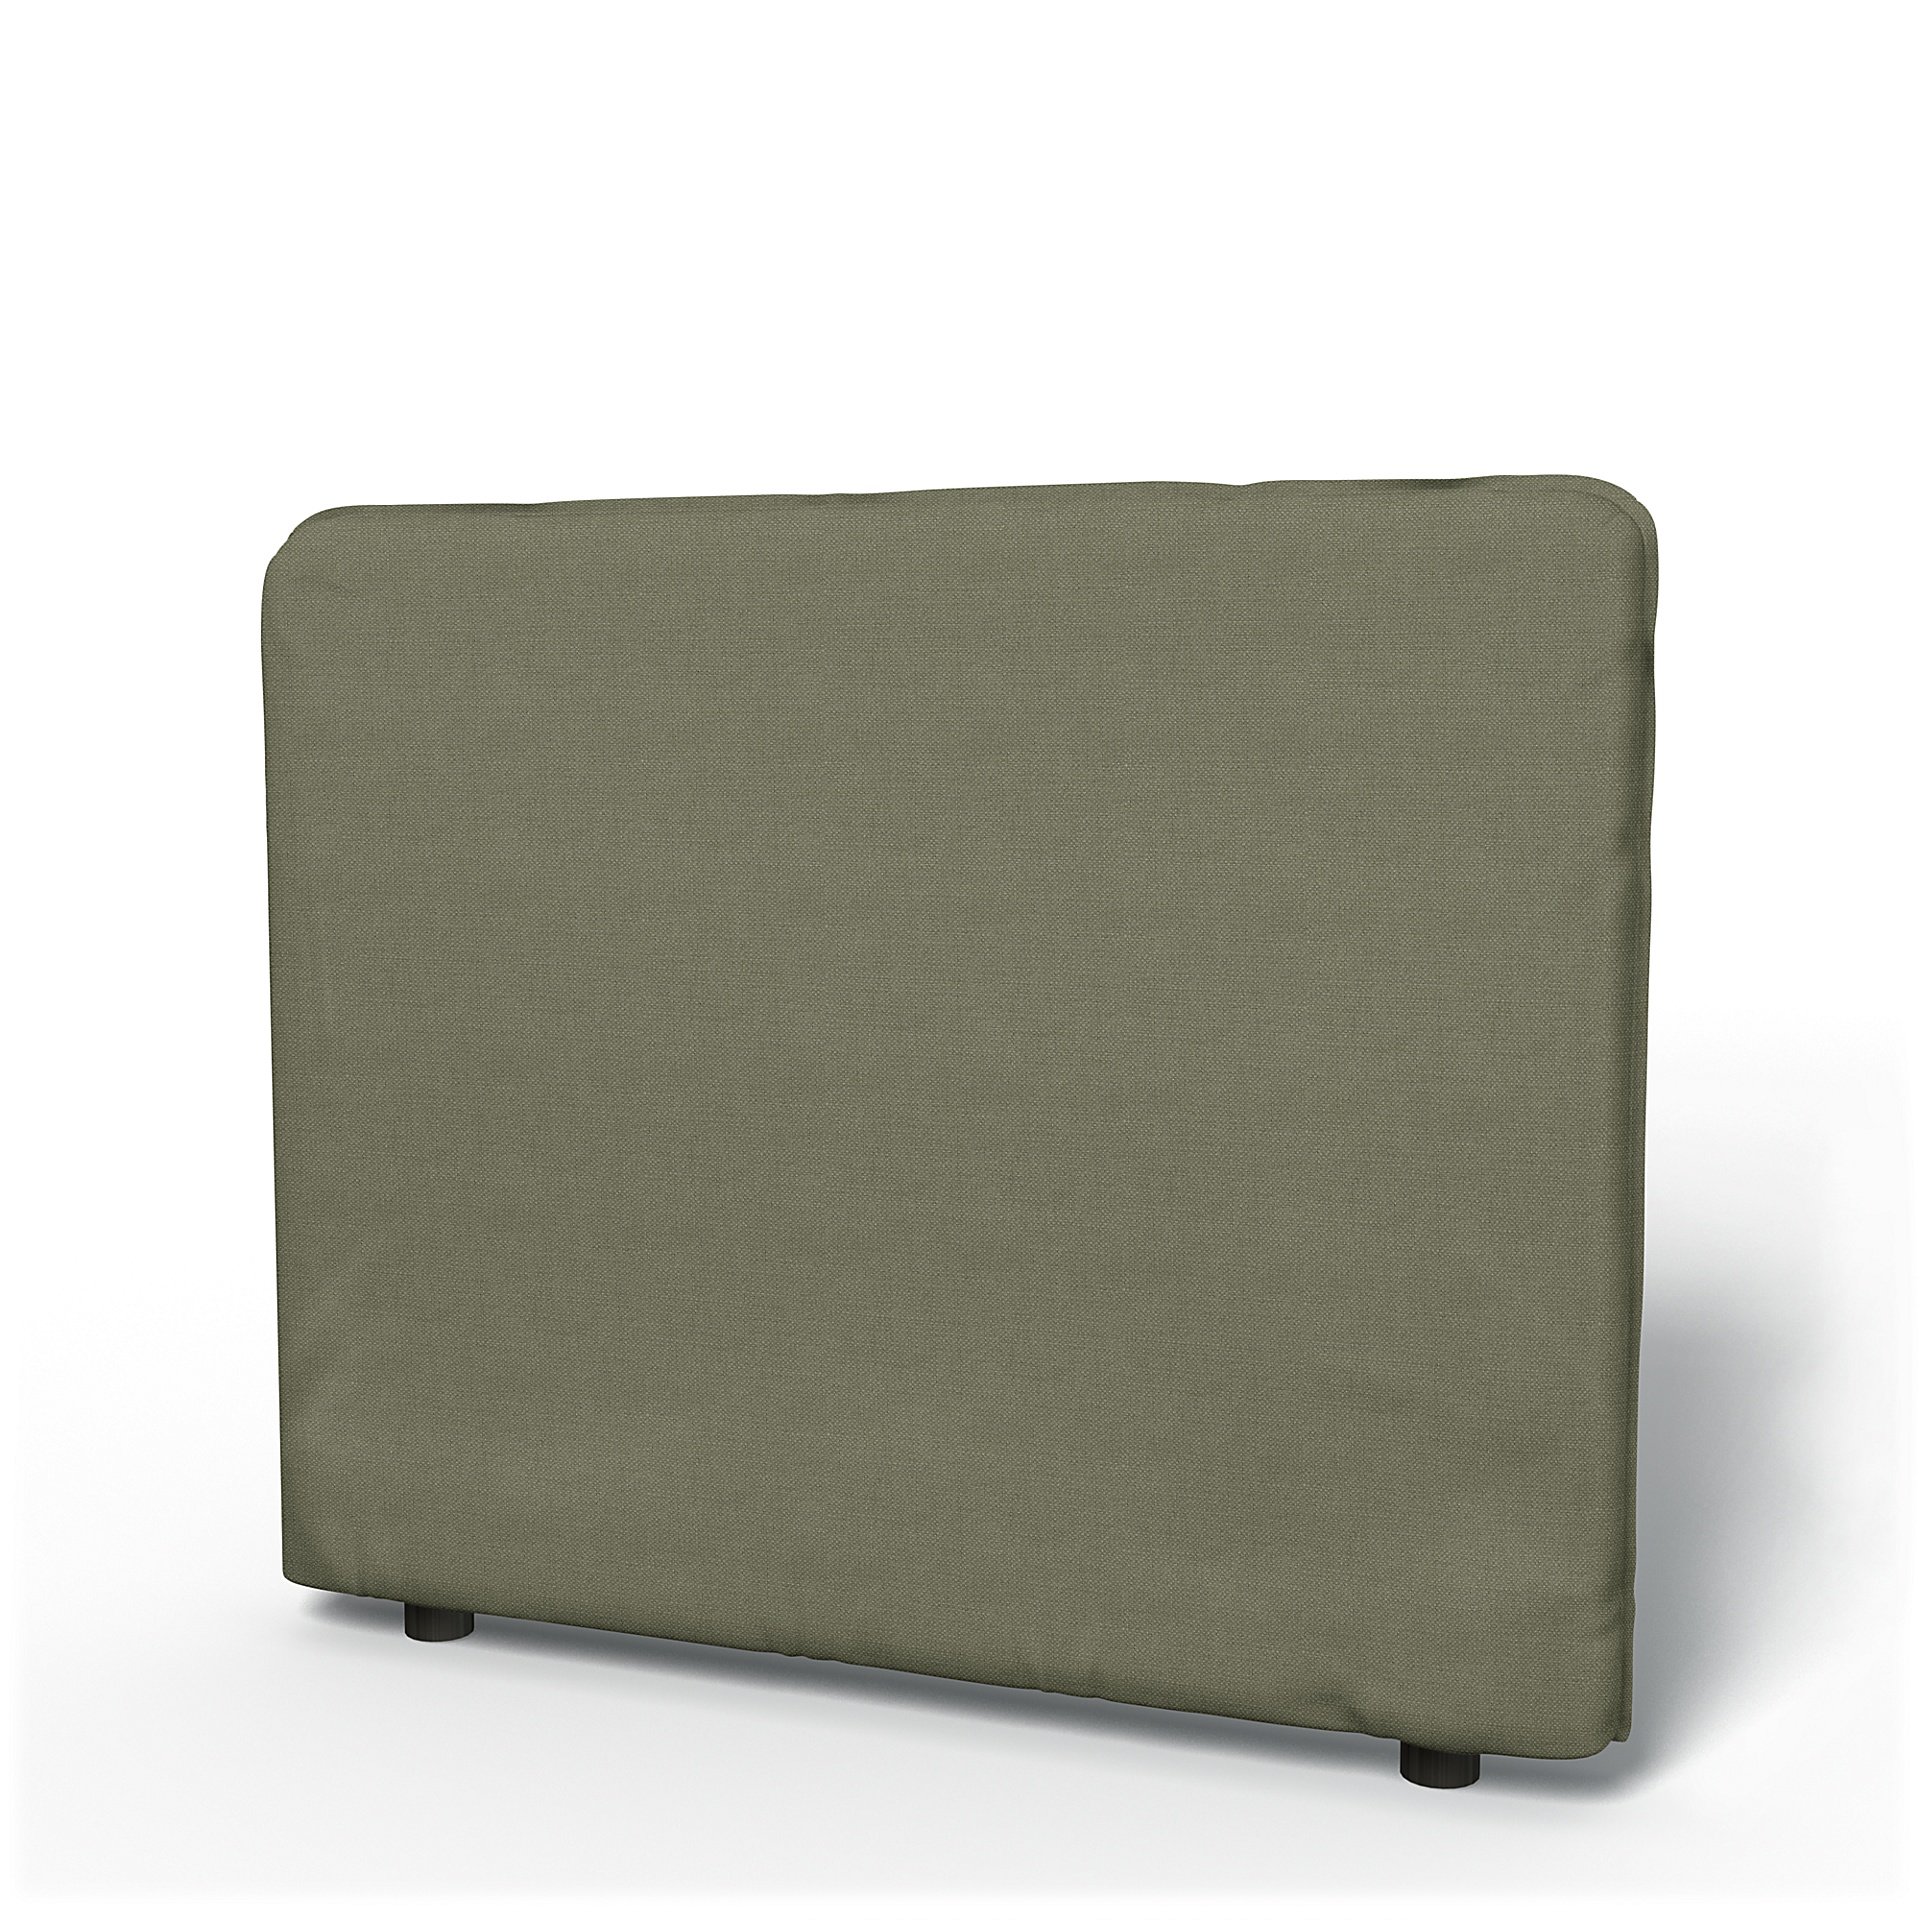 IKEA - Vallentuna Low Backrest Cover 100x80cm 39x32in, Sage, Linen - Bemz